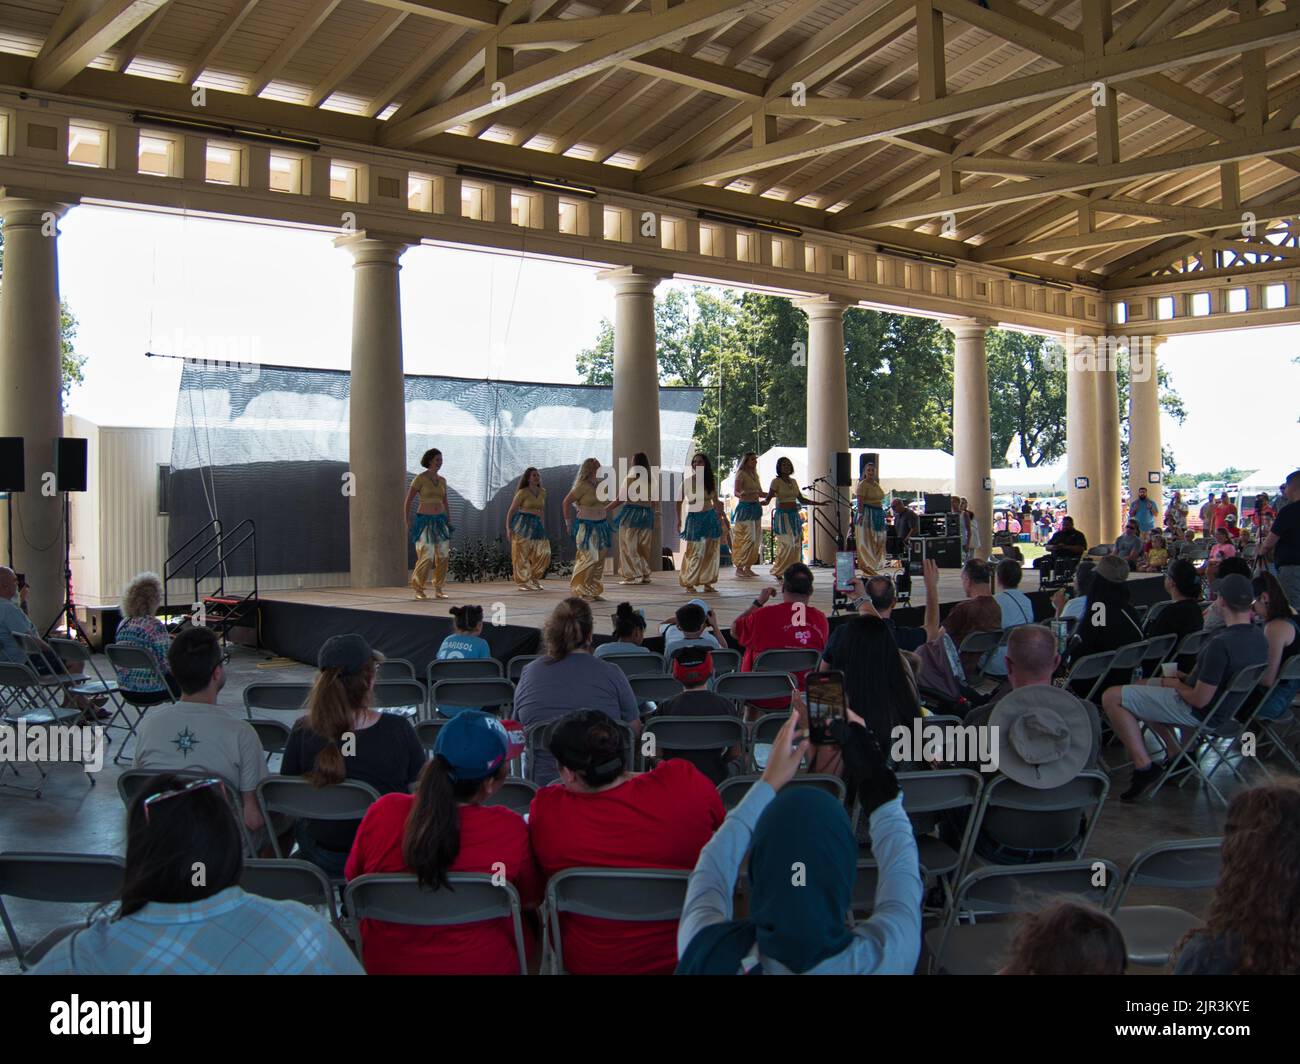 Kansas City, Missouri - 20 août 2022 - Festival d'enrichissement ethnique à Swope Park - photo de la foule Banque D'Images